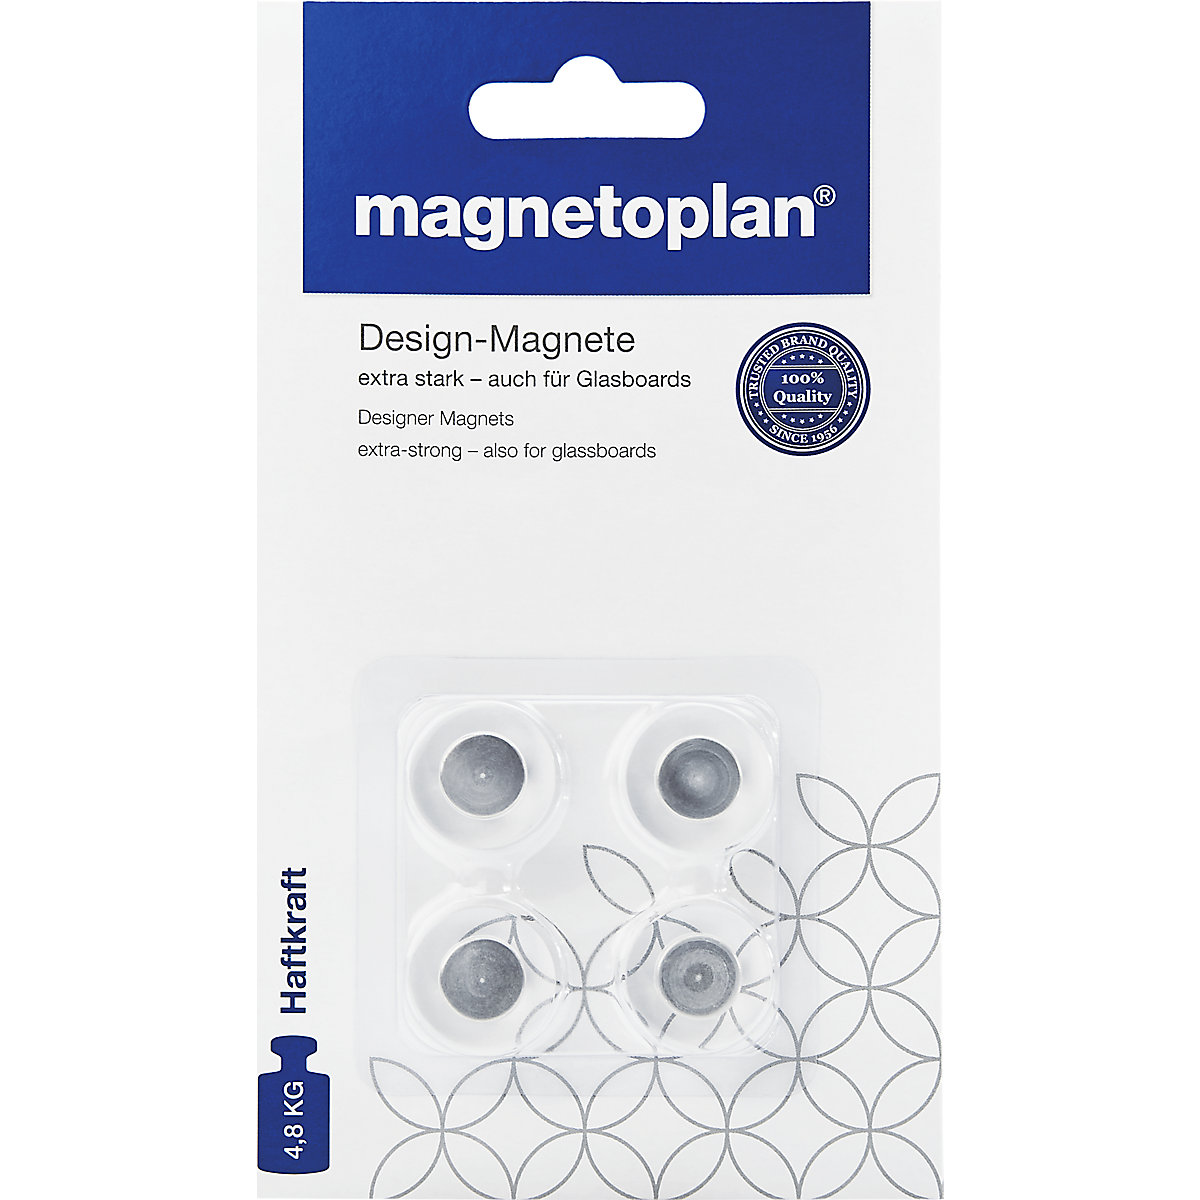 Design-Magnet magnetoplan